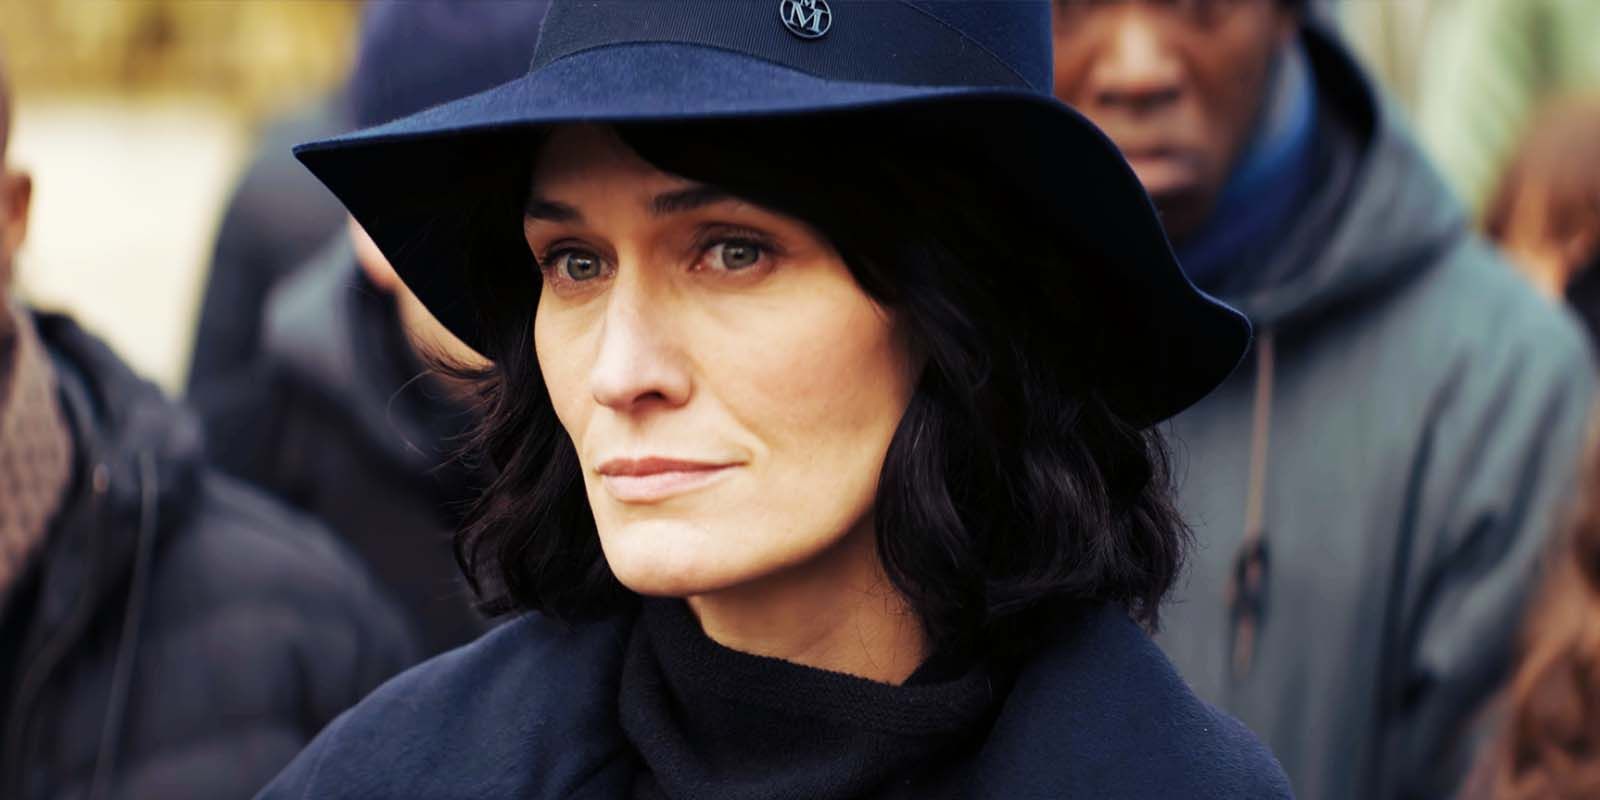 Clotilde Hesme sebagai Juliette Pellegrini di Lupin musim 3